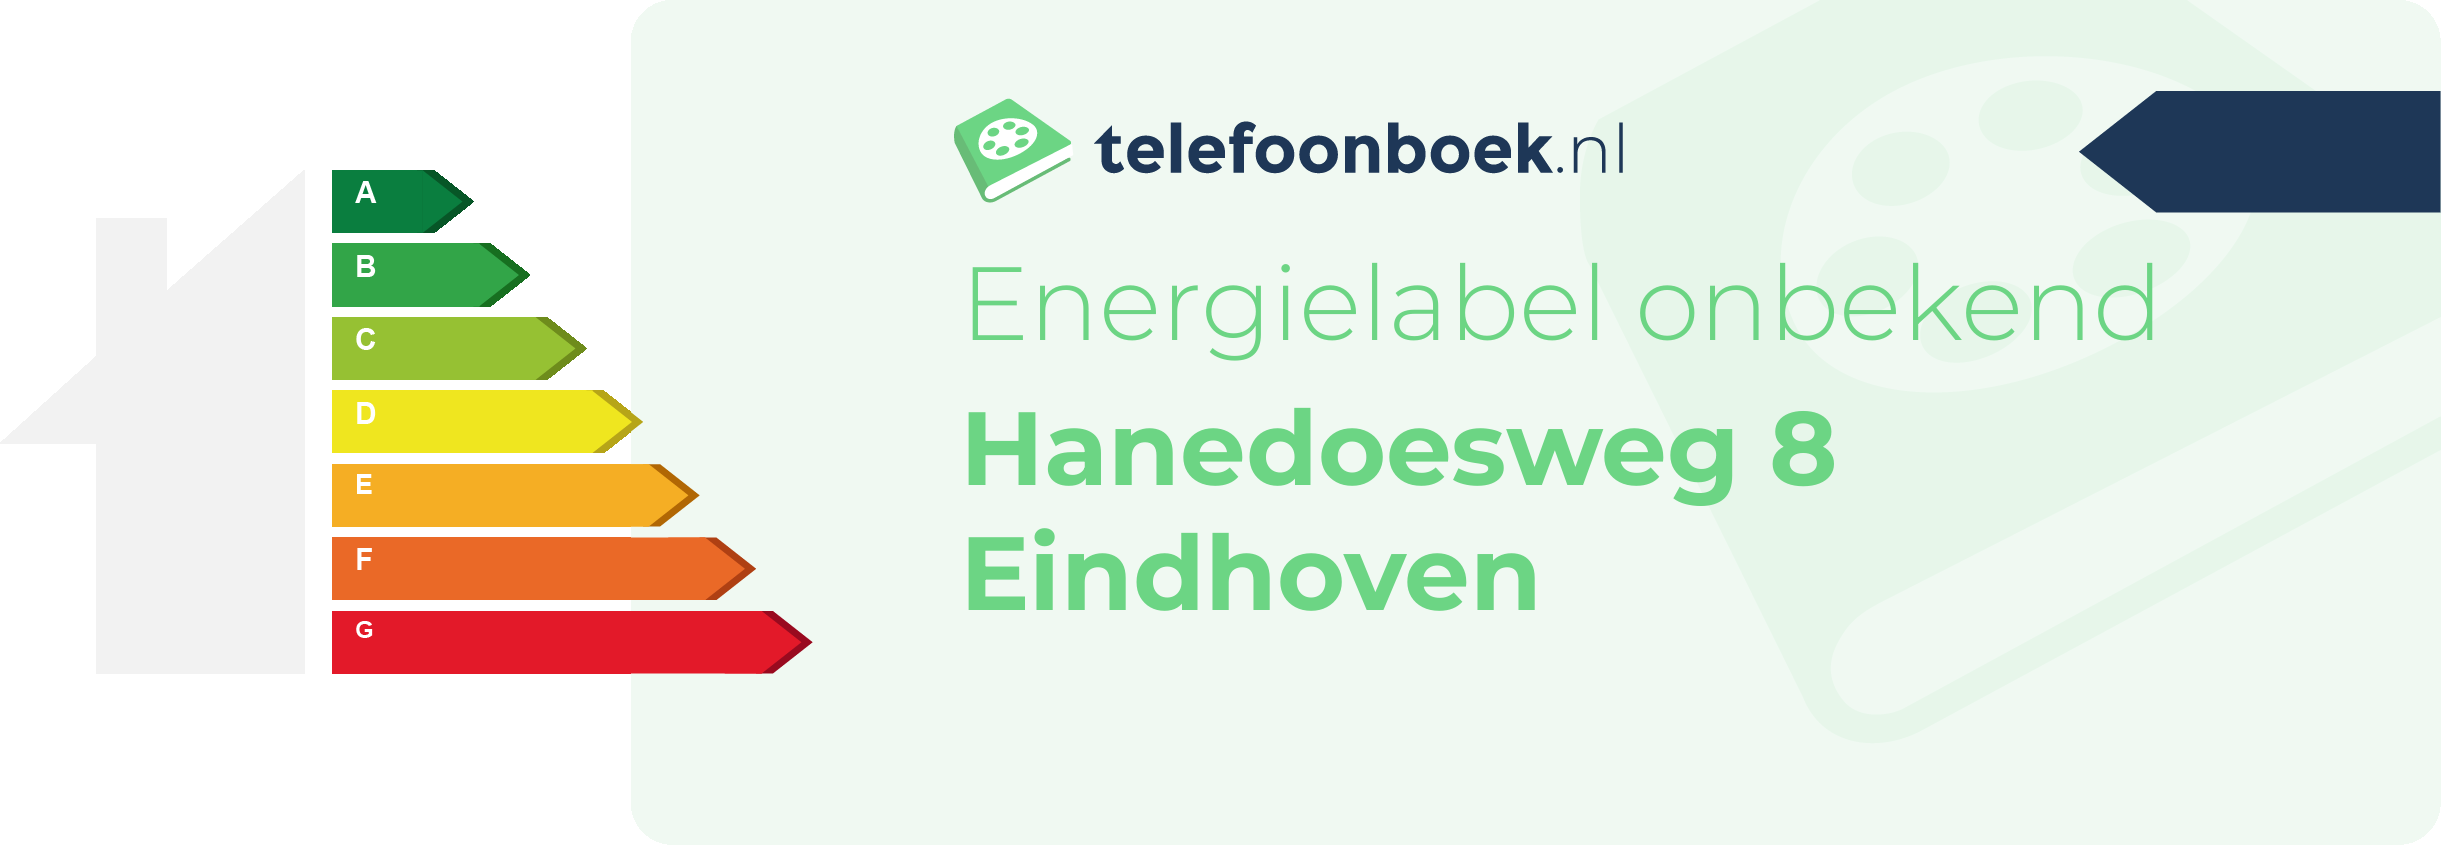 Energielabel Hanedoesweg 8 Eindhoven